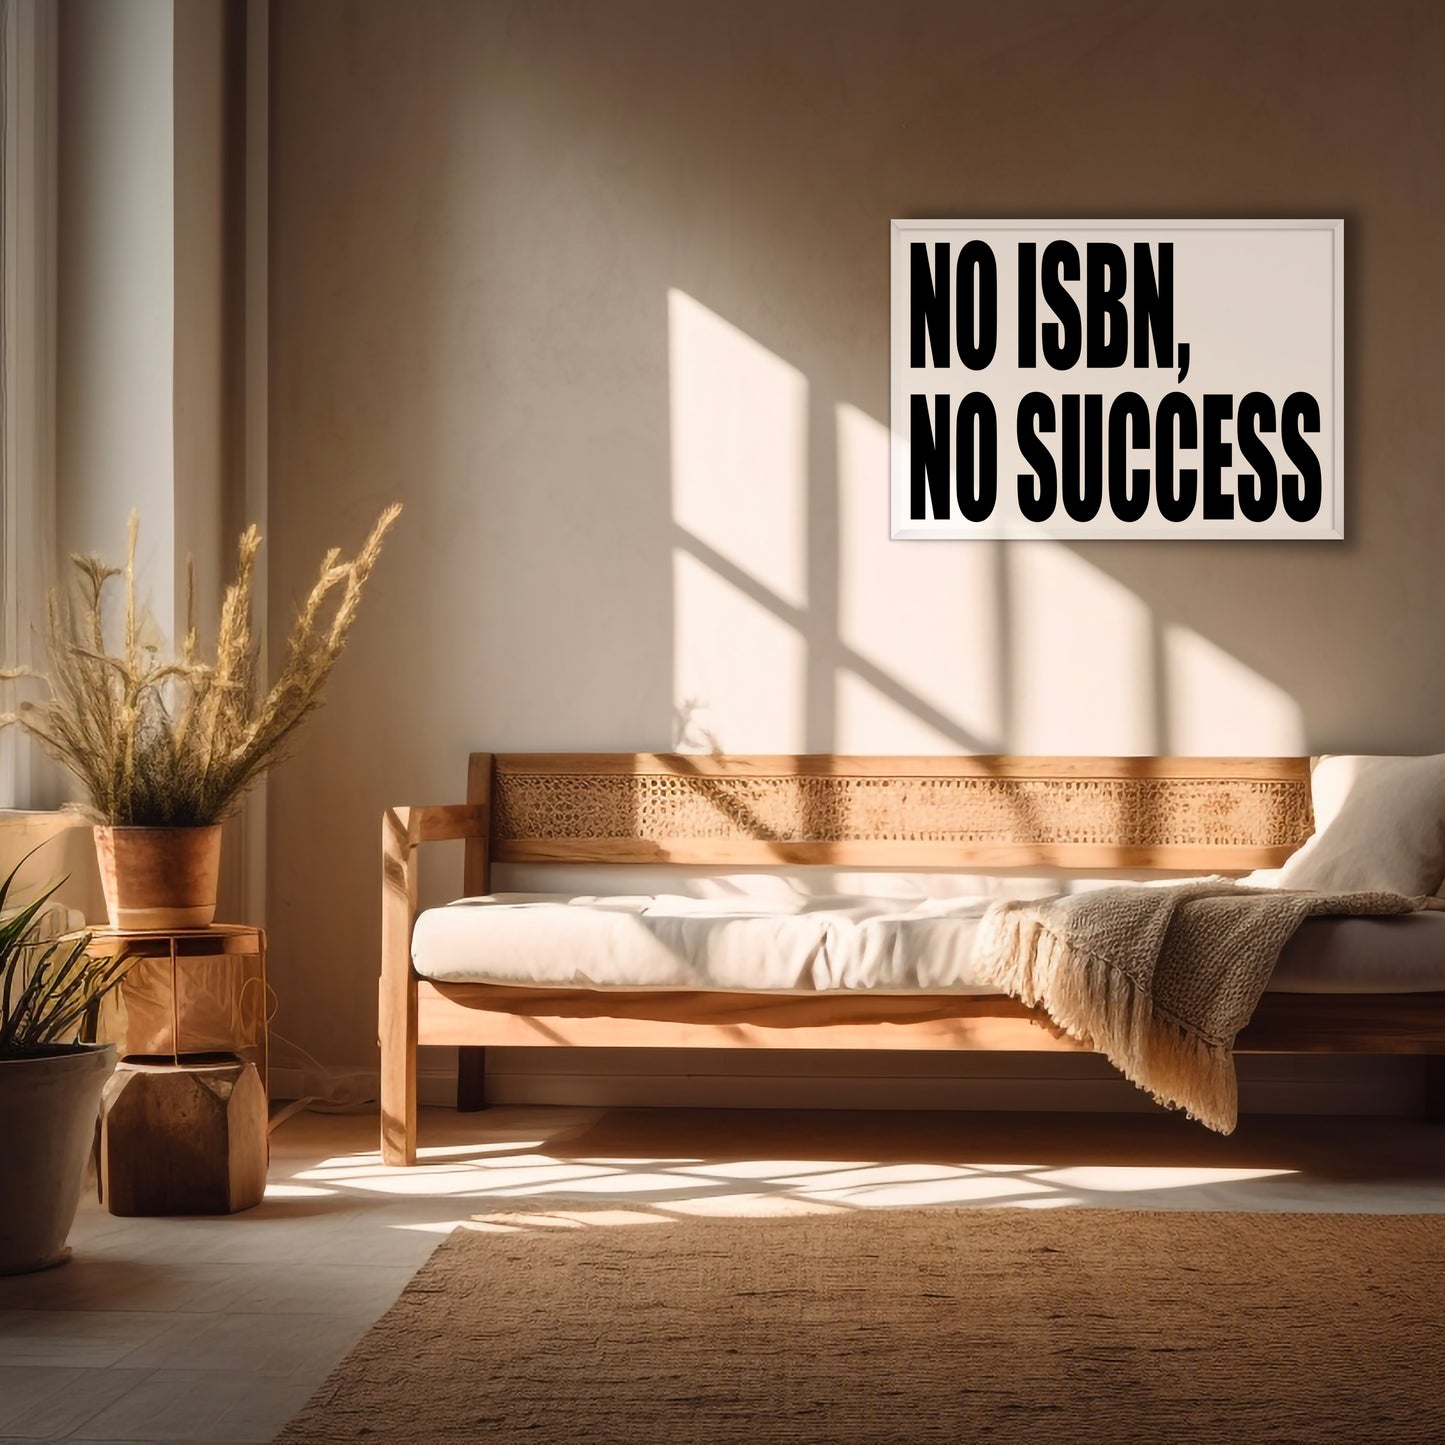 PRINT - NO ISBN, NO SUCCESS